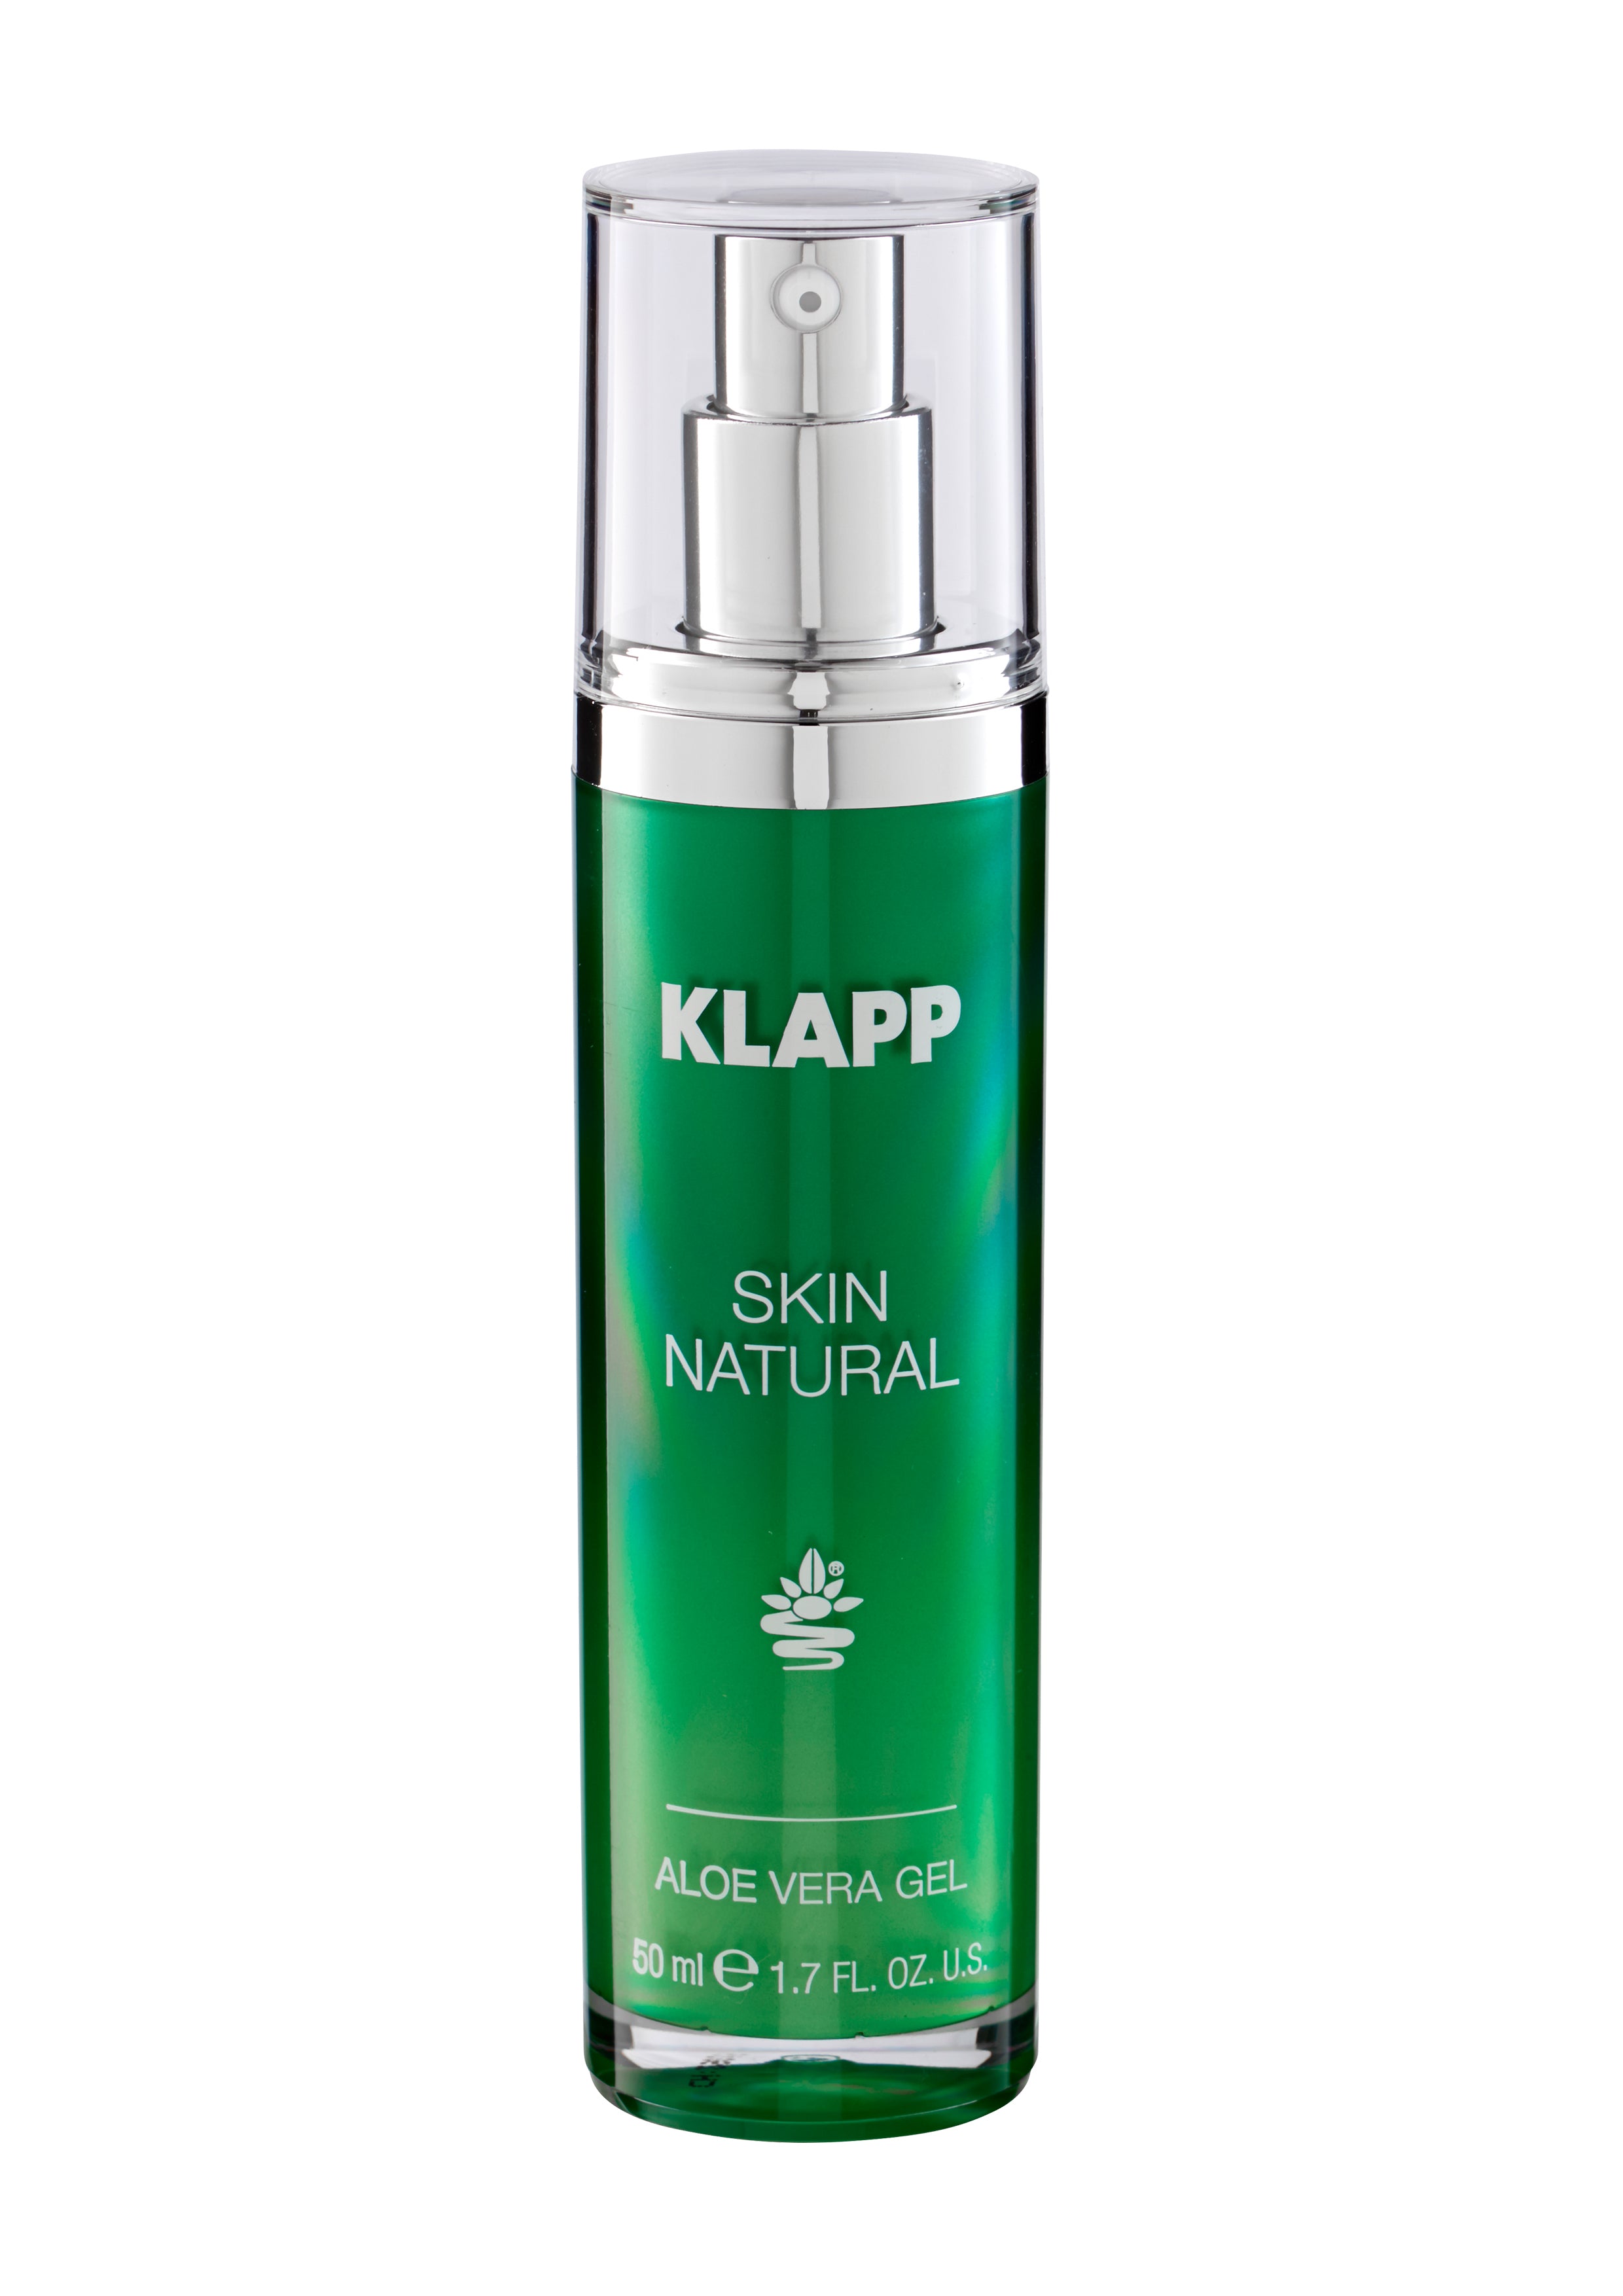 Klapp Skin Natural - Aloe Vera Gel